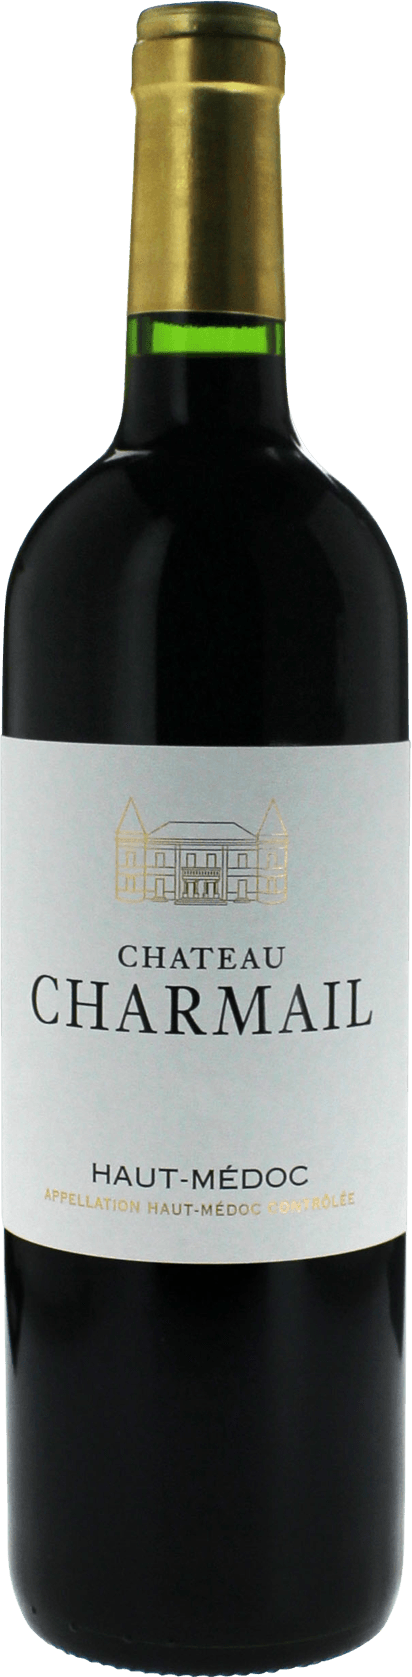 Charmail 2016  Haut-Mdoc, Bordeaux rouge